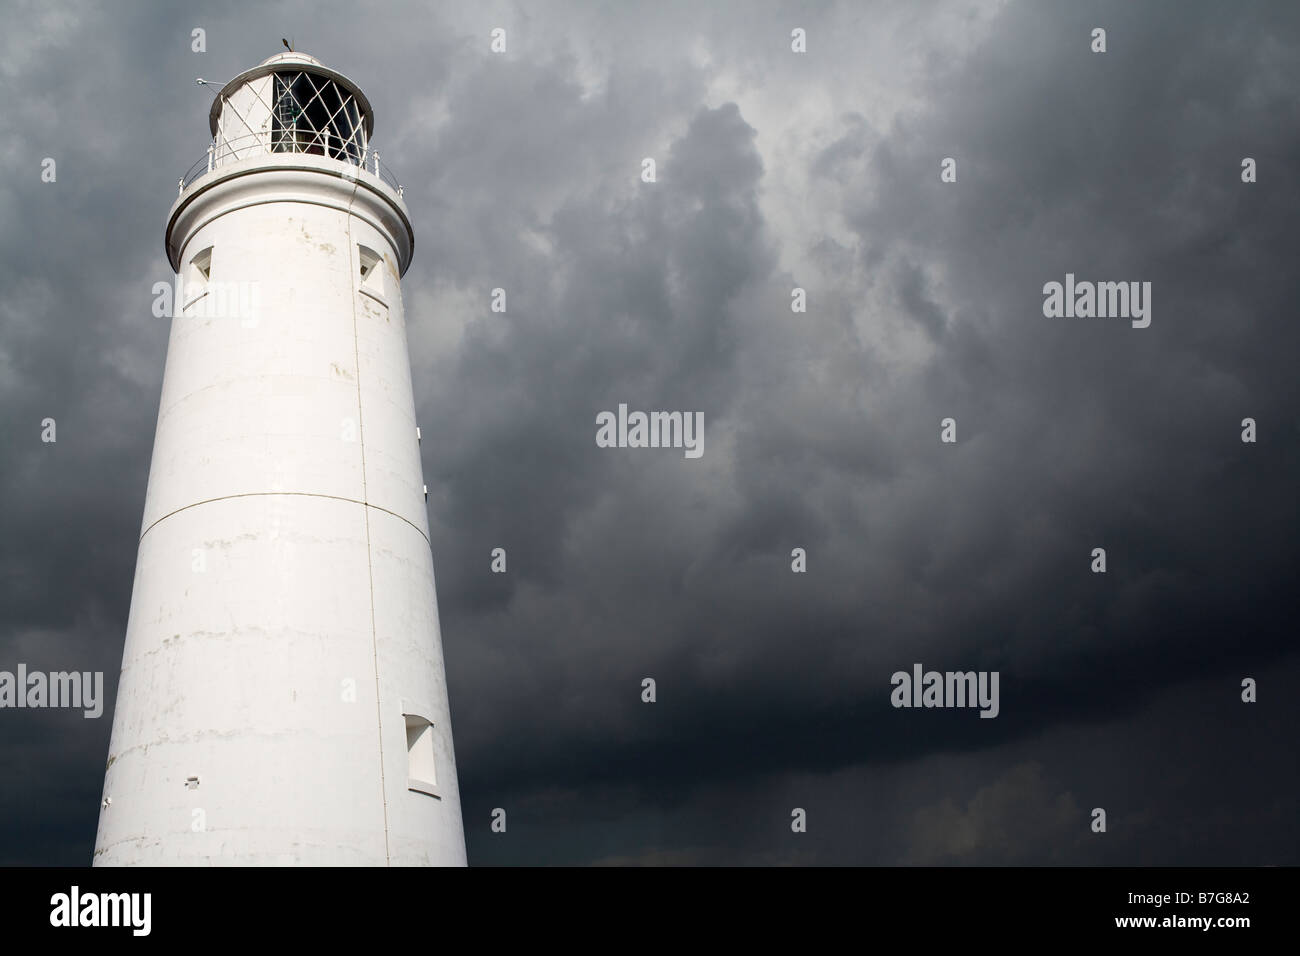 Southwold Faro si affaccia un avvicinamento tempesta. Immagine contiene spazio per copia invertita Foto Stock